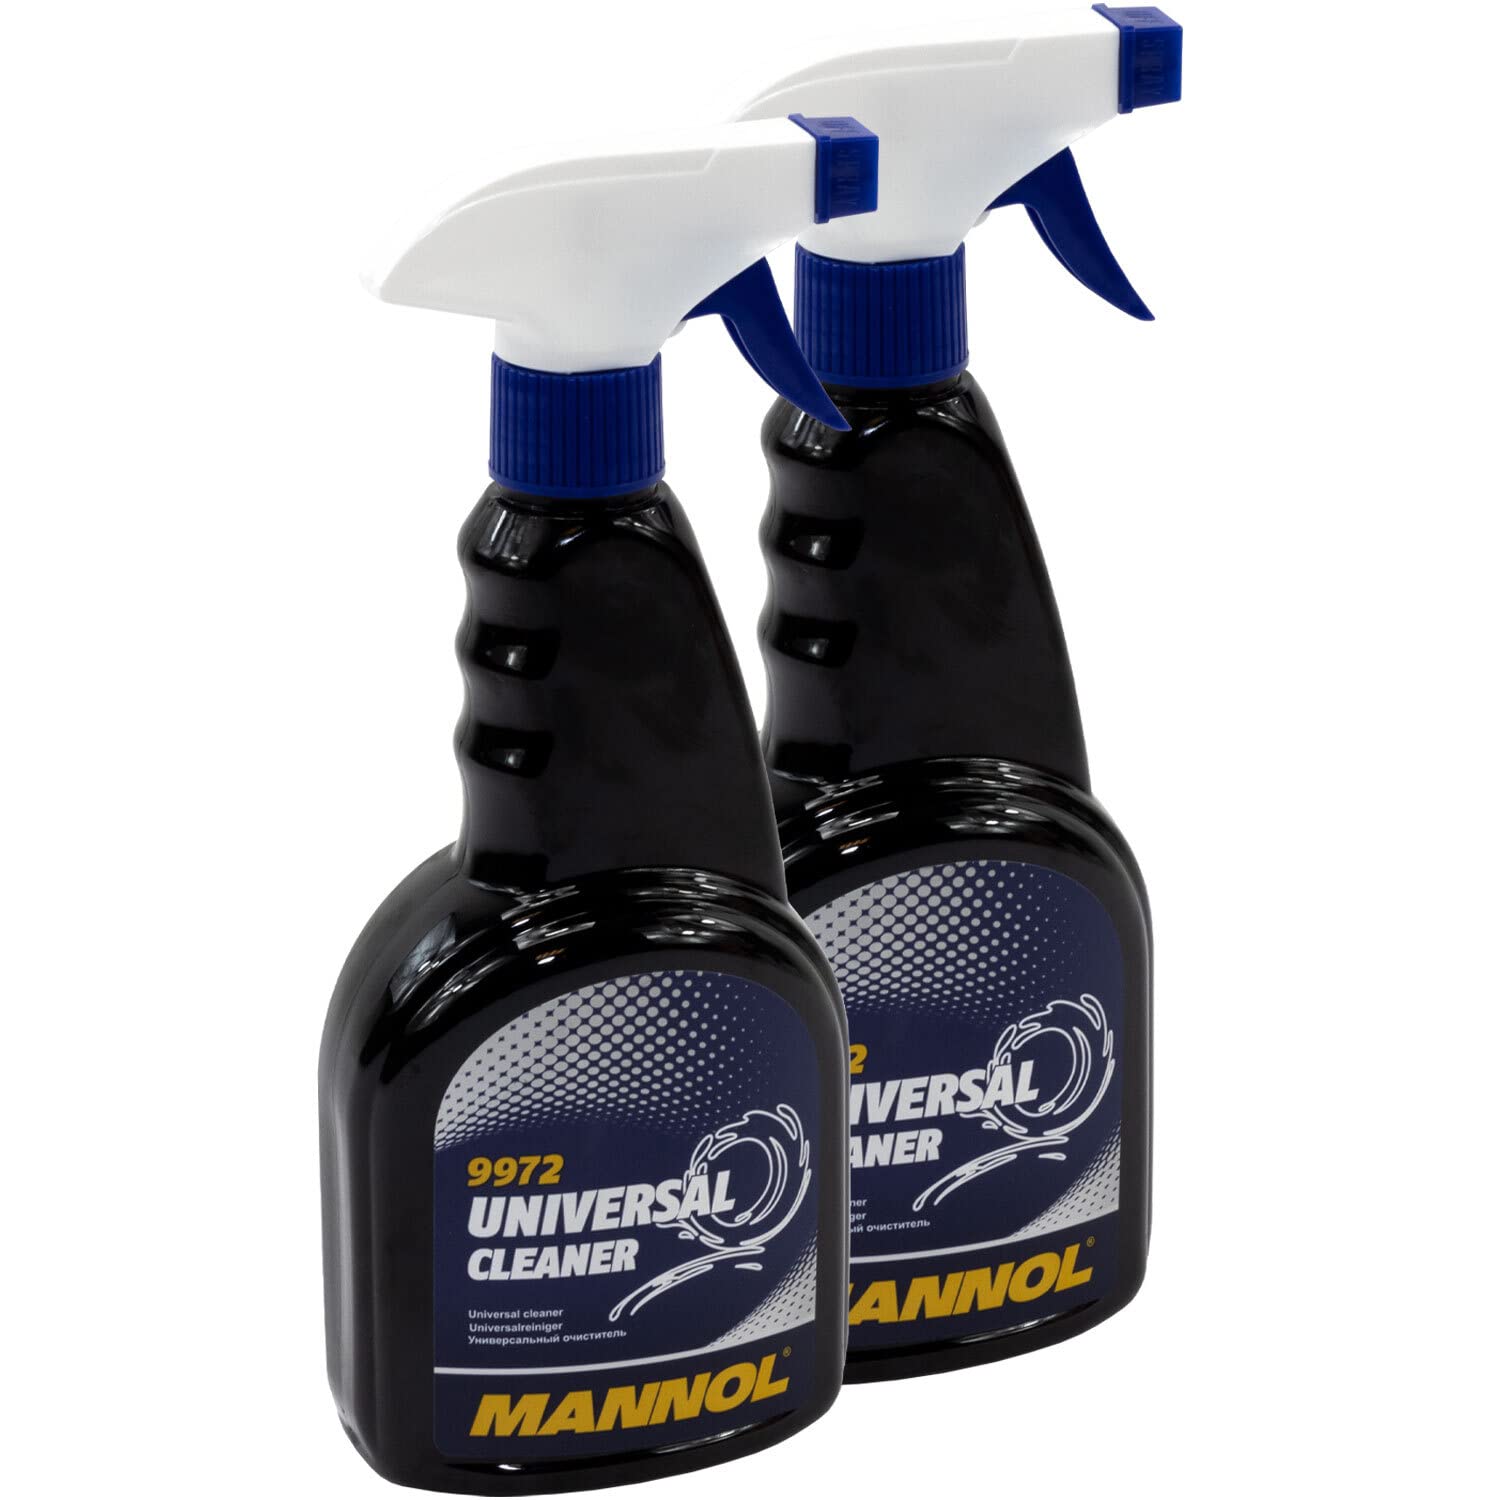 Universalreiniger Universal Cleaner MANNOL 2 X 500 ml von MVH Bockauf